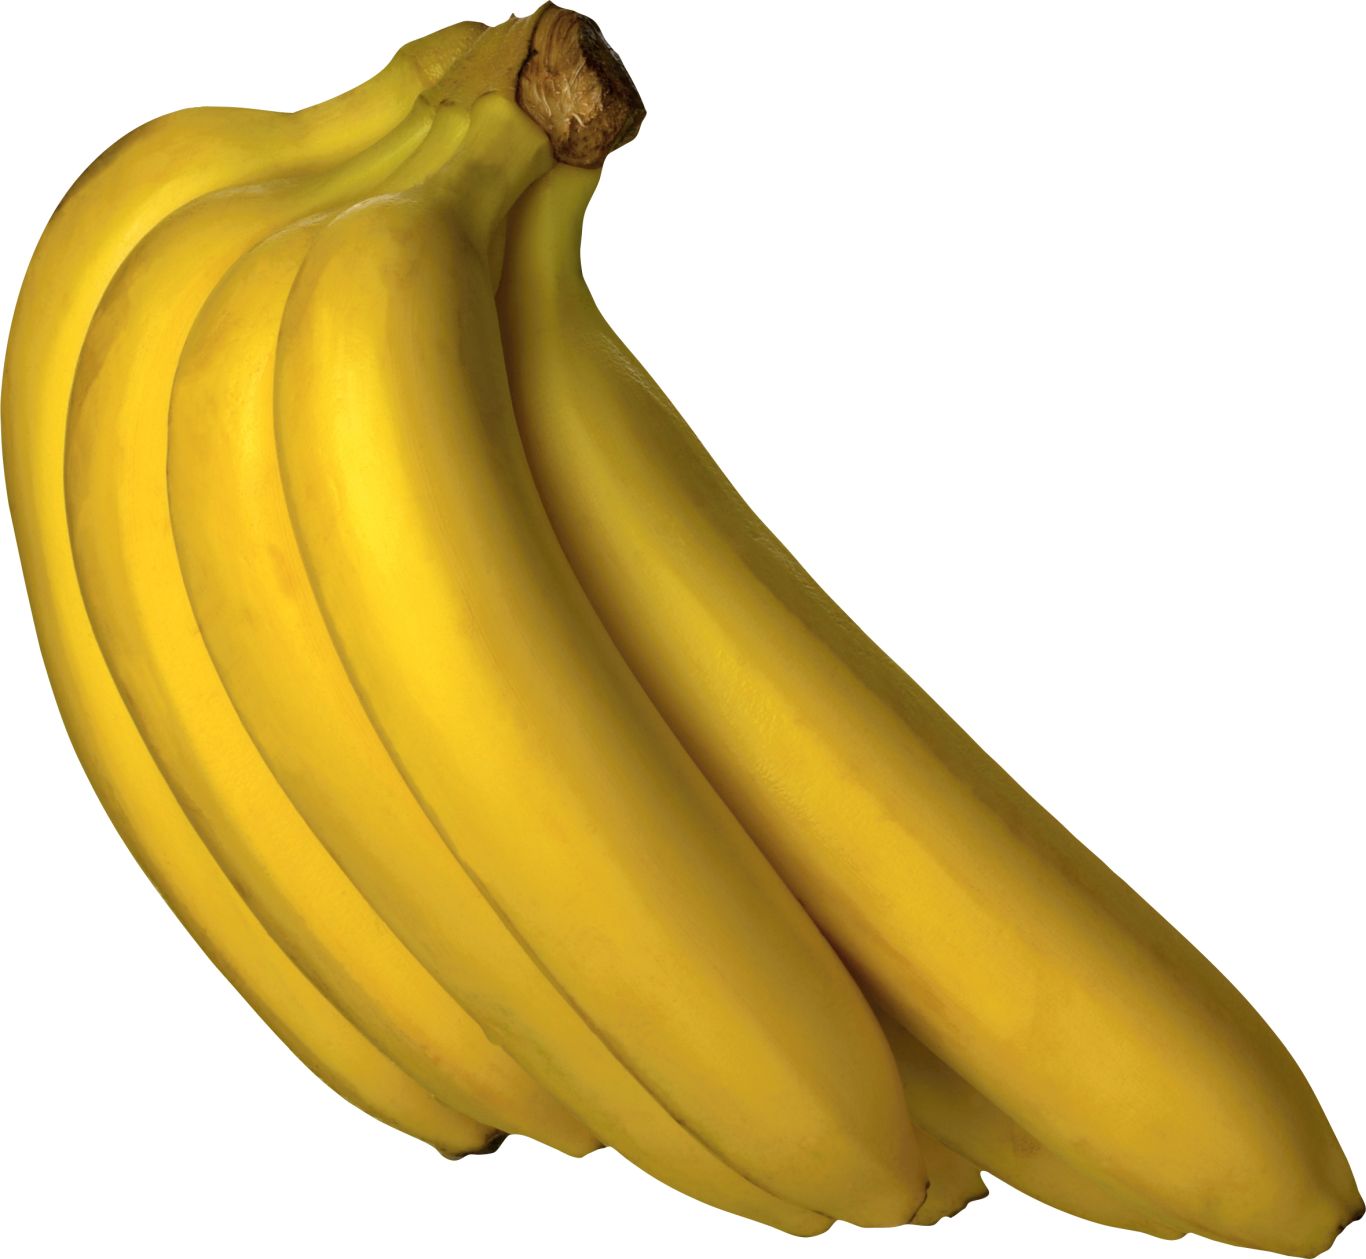 bananas PNG image    图片编号:820